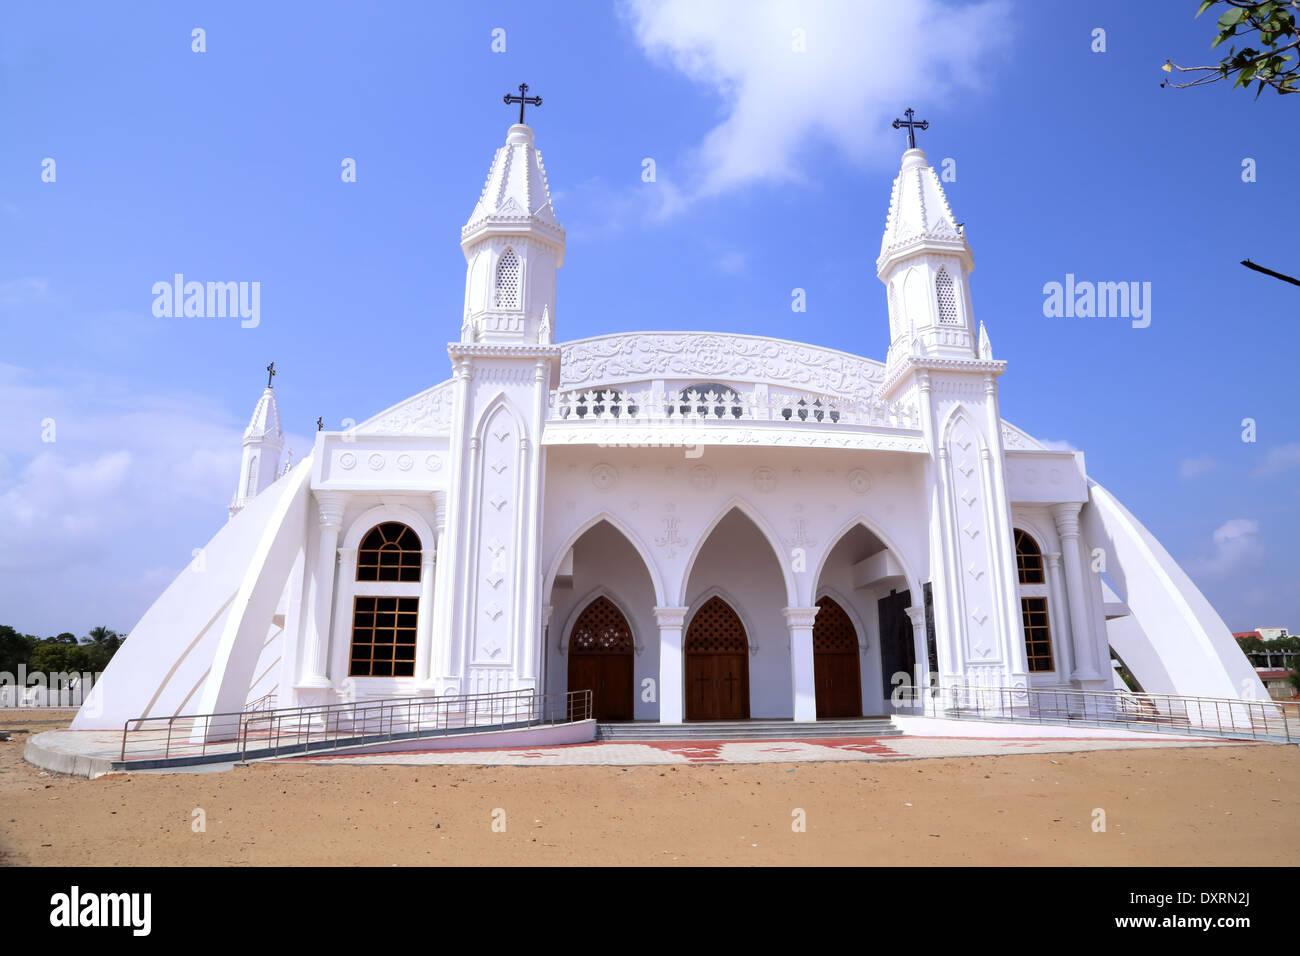 La estrella de la mañana, la iglesia de Nuestra Señora de la salud de Vailankanni, distrito de Nagapattinam, Tamil Nadu, India Foto de stock